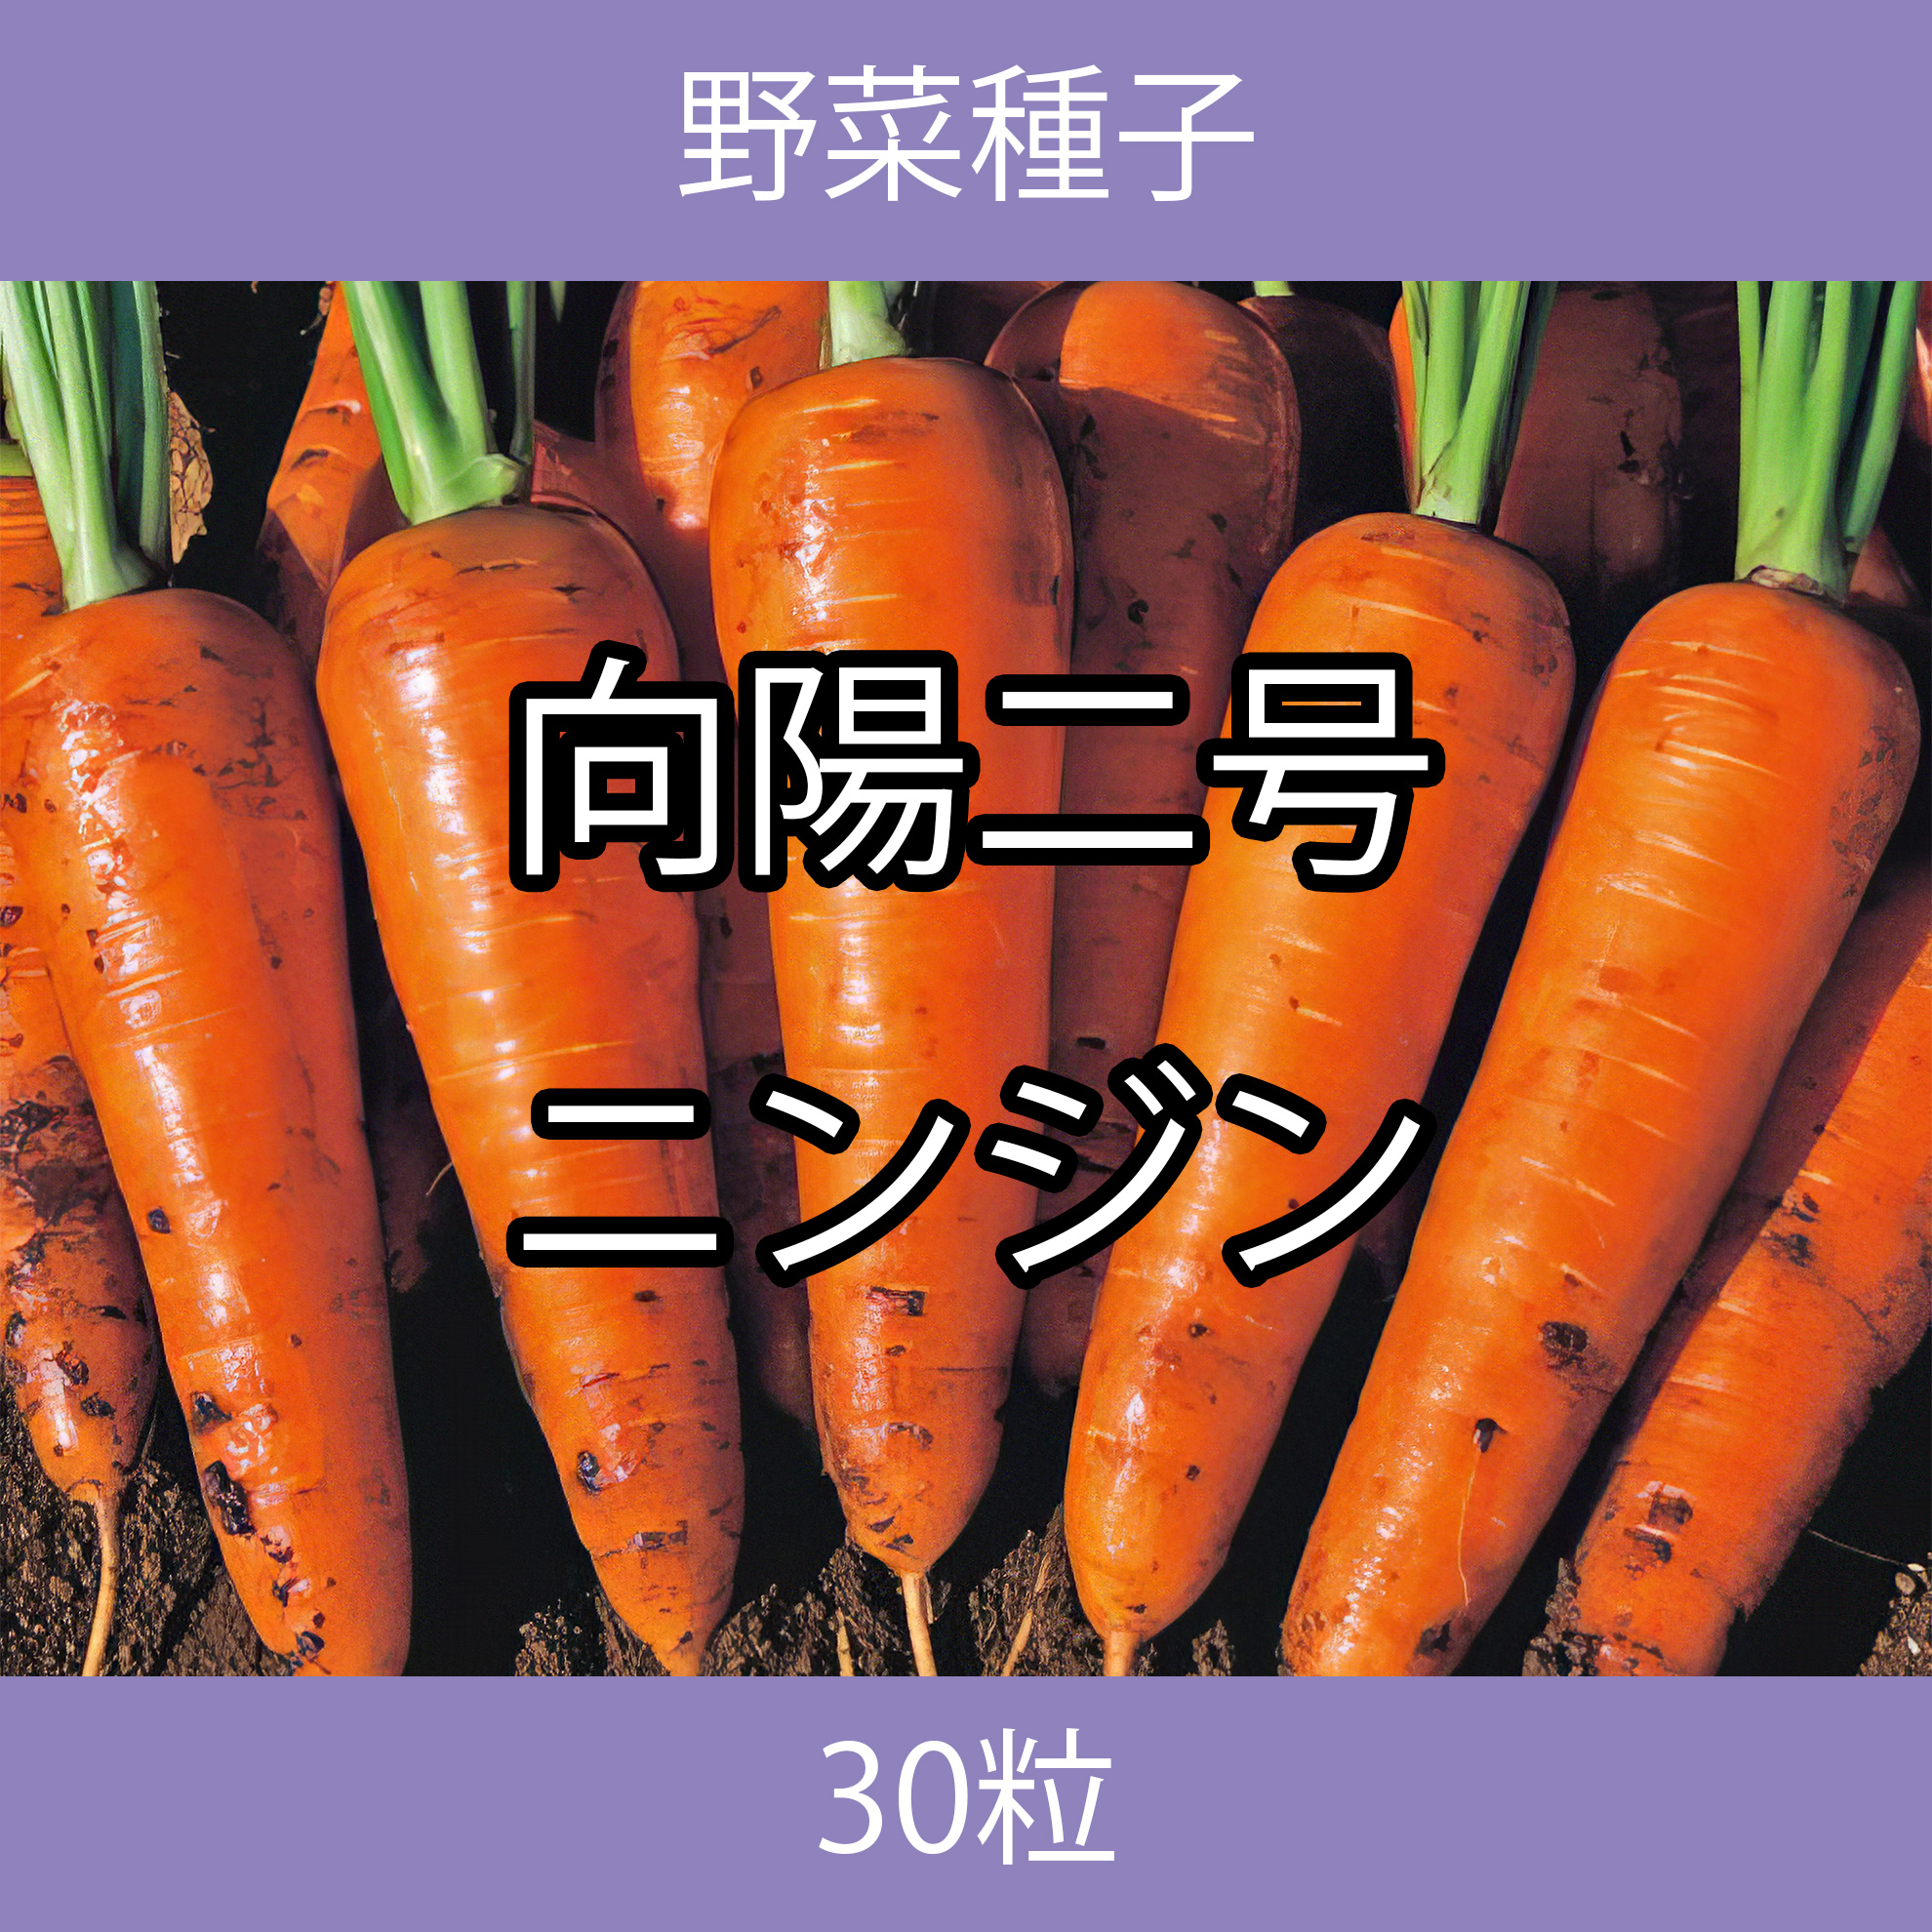 野菜種子 TVF01 向陽二号ニンジン 30粒